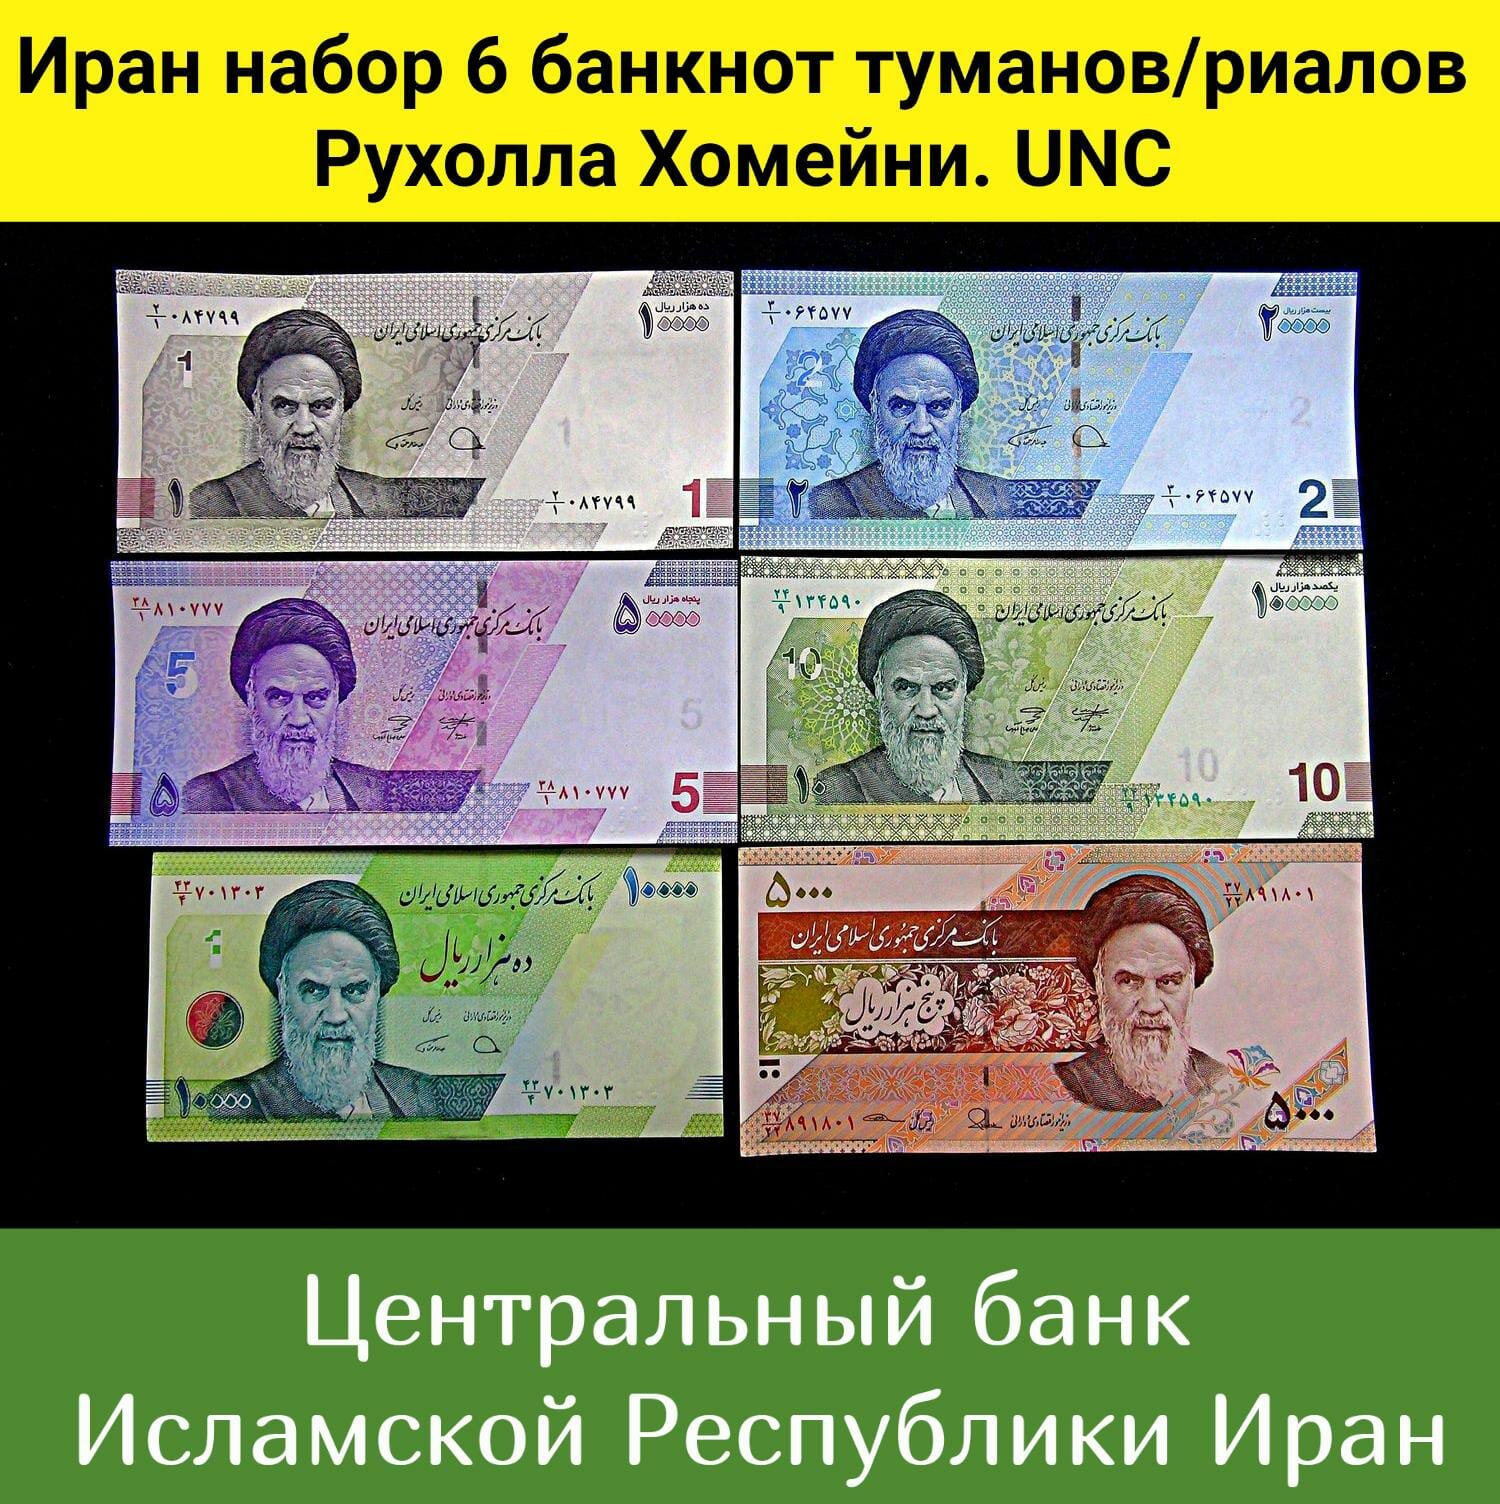 Иран набор 6 банкнот риалов туманов Рухолла Хомейни. UNC